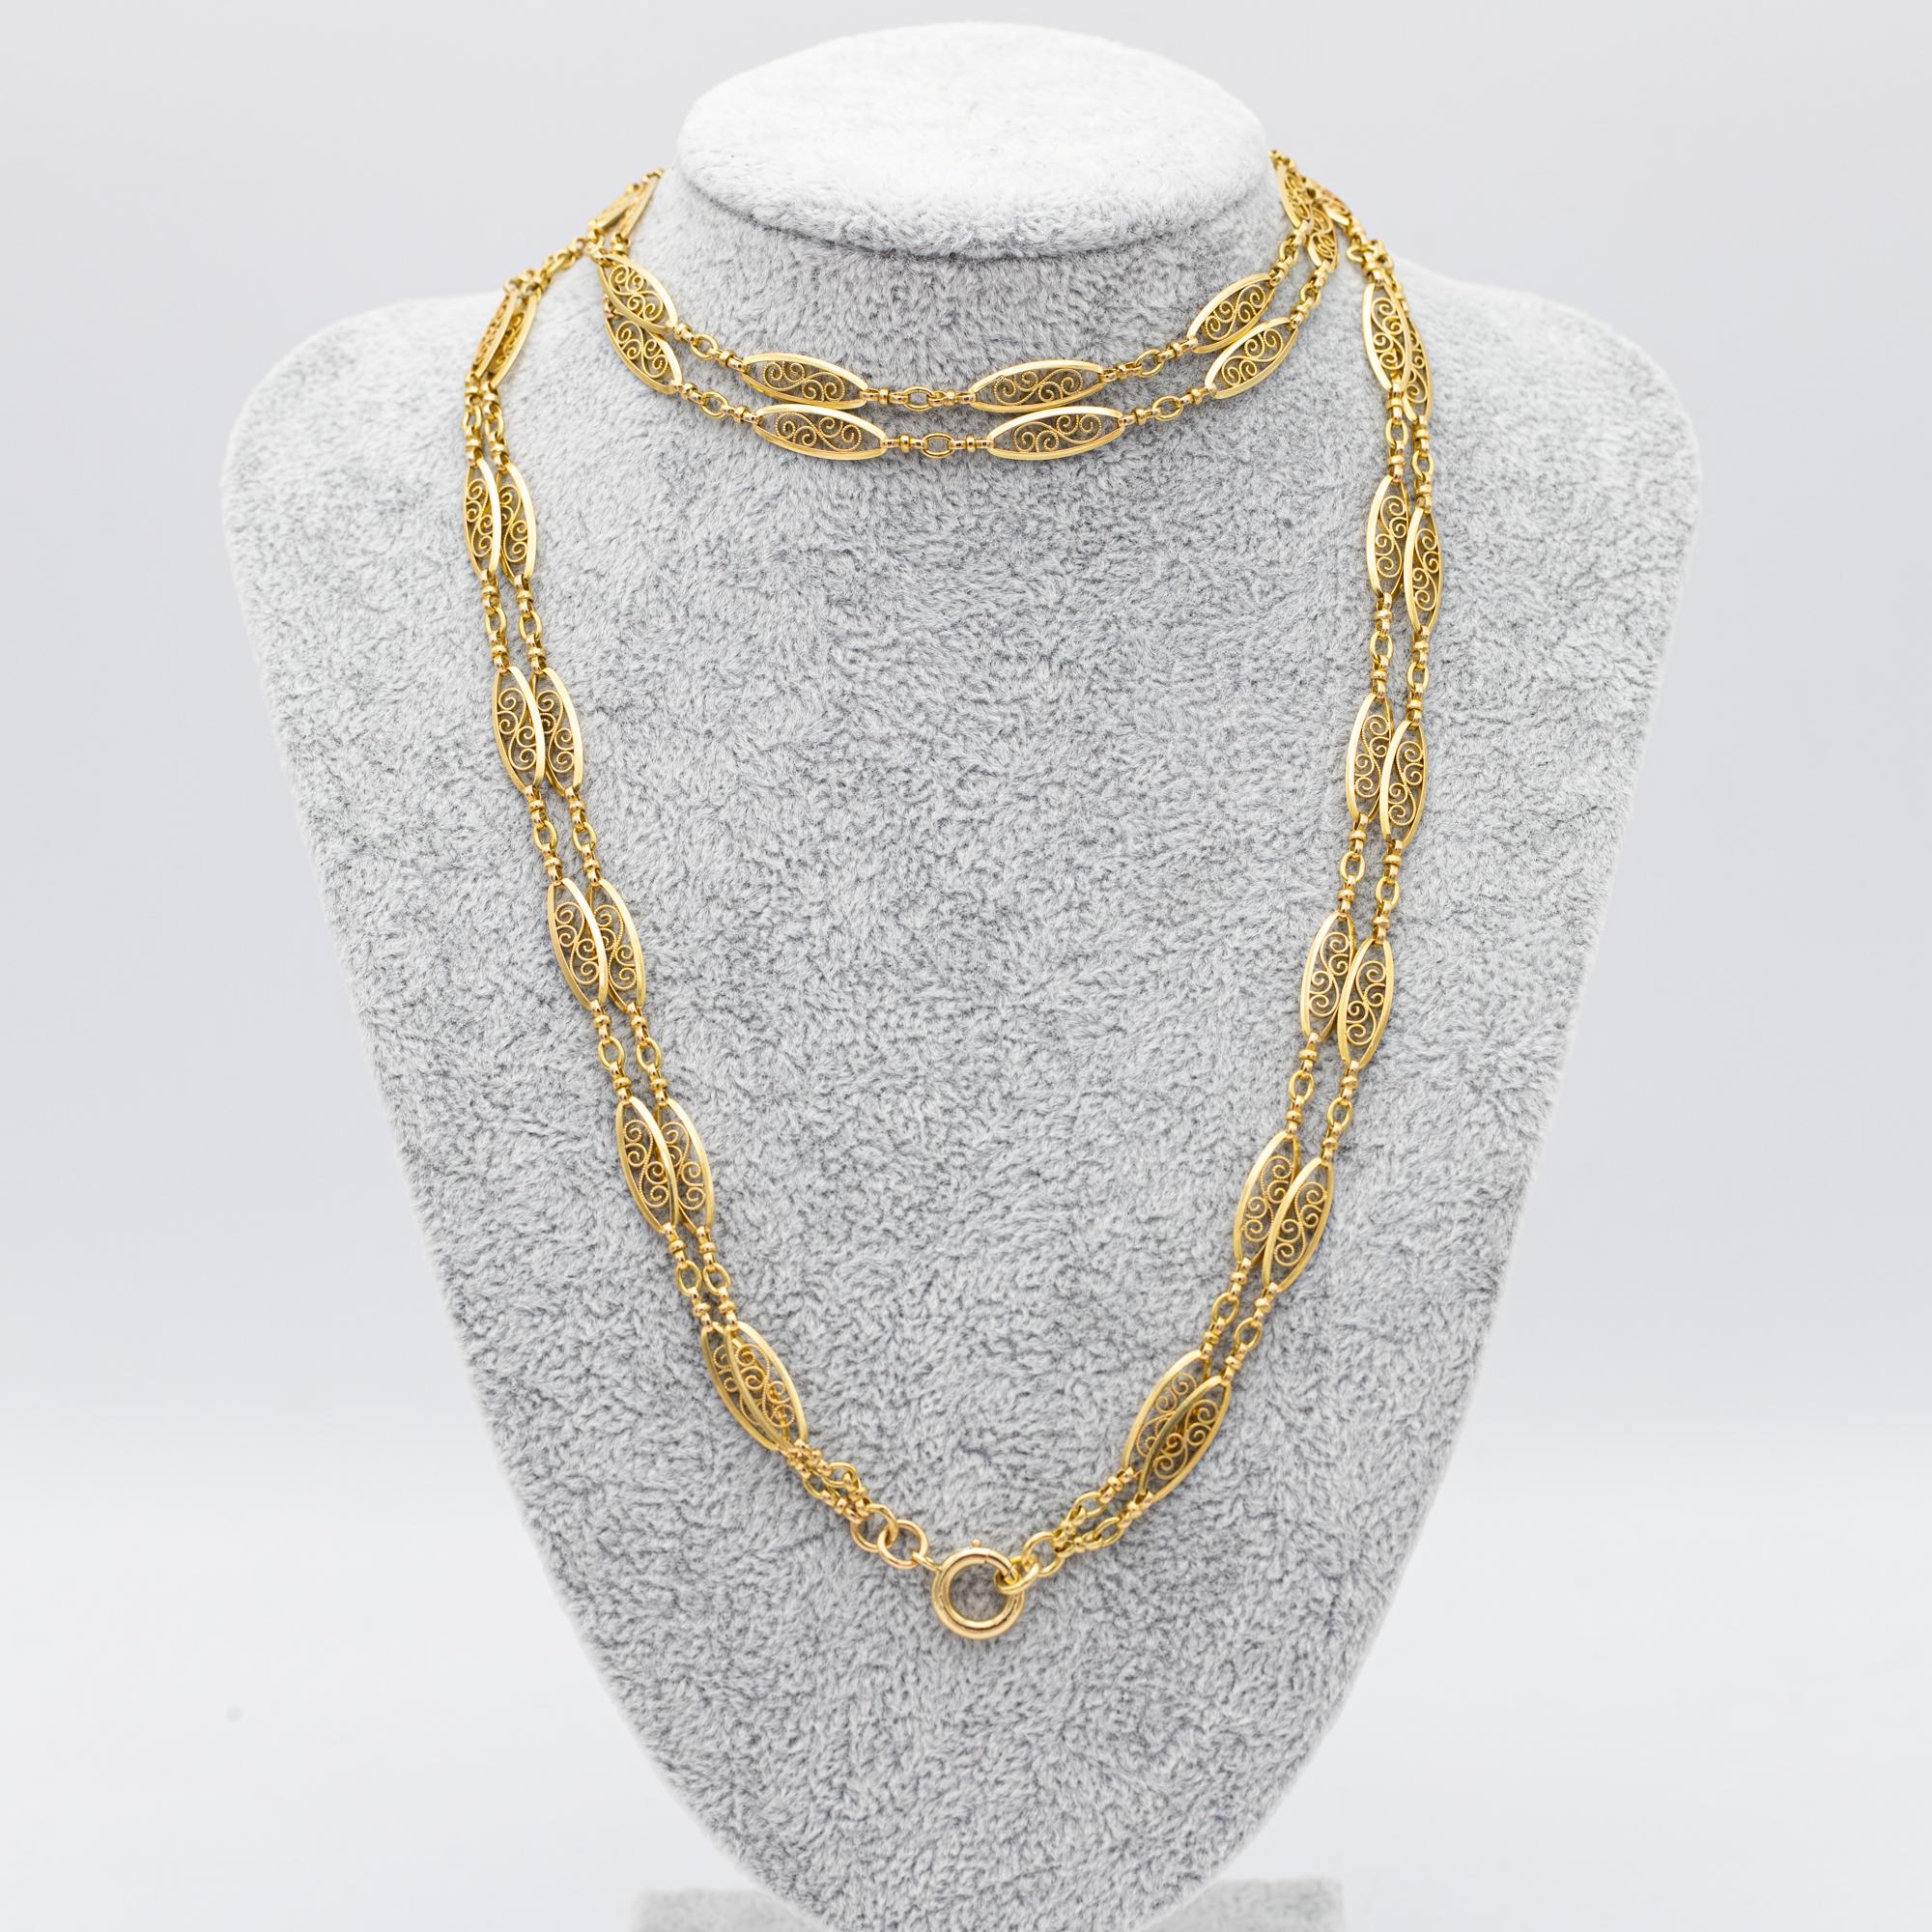 Antique 18k gold Sautoir necklace, 155cm long guard, Victorian double rope chain 10